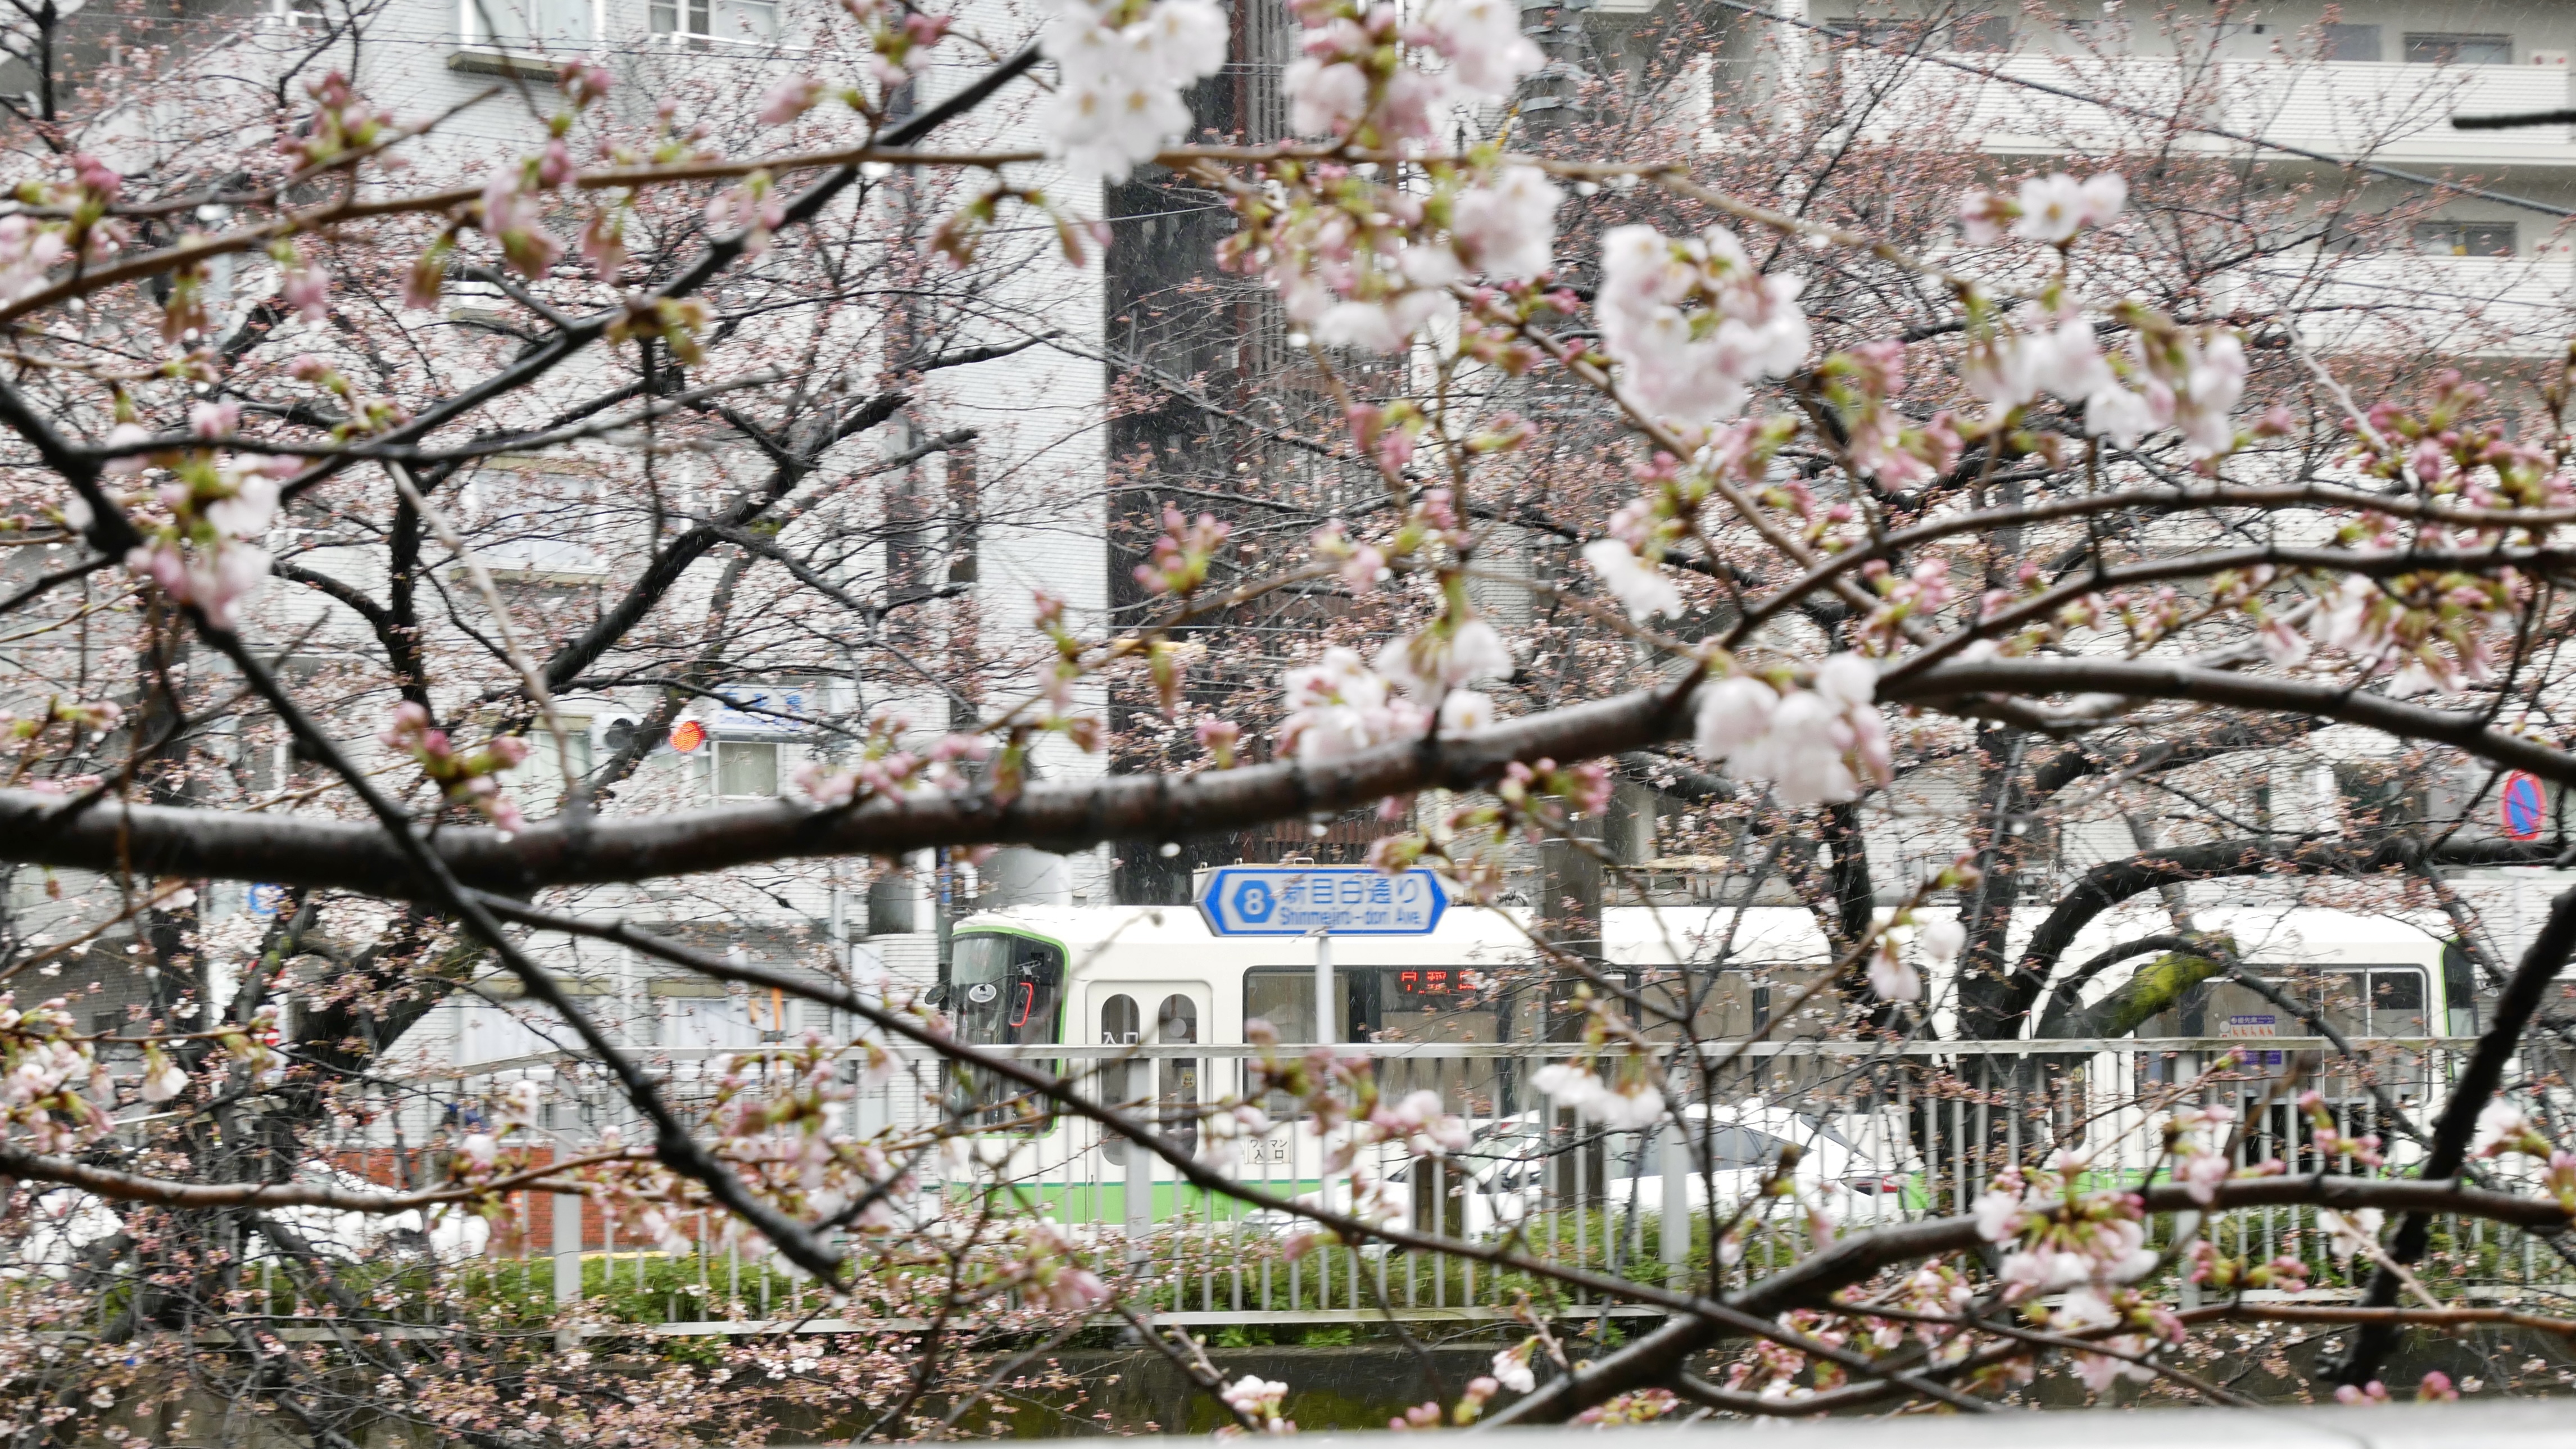 2022-3-22</br>第一次带相机出门，老激动了，到处拍。但是其实樱花还没完全开，再加上下着小雨，单拍樱花反而拍不出来什么花样。偶然透过树枝看到了行走中的电车。灵感来了！